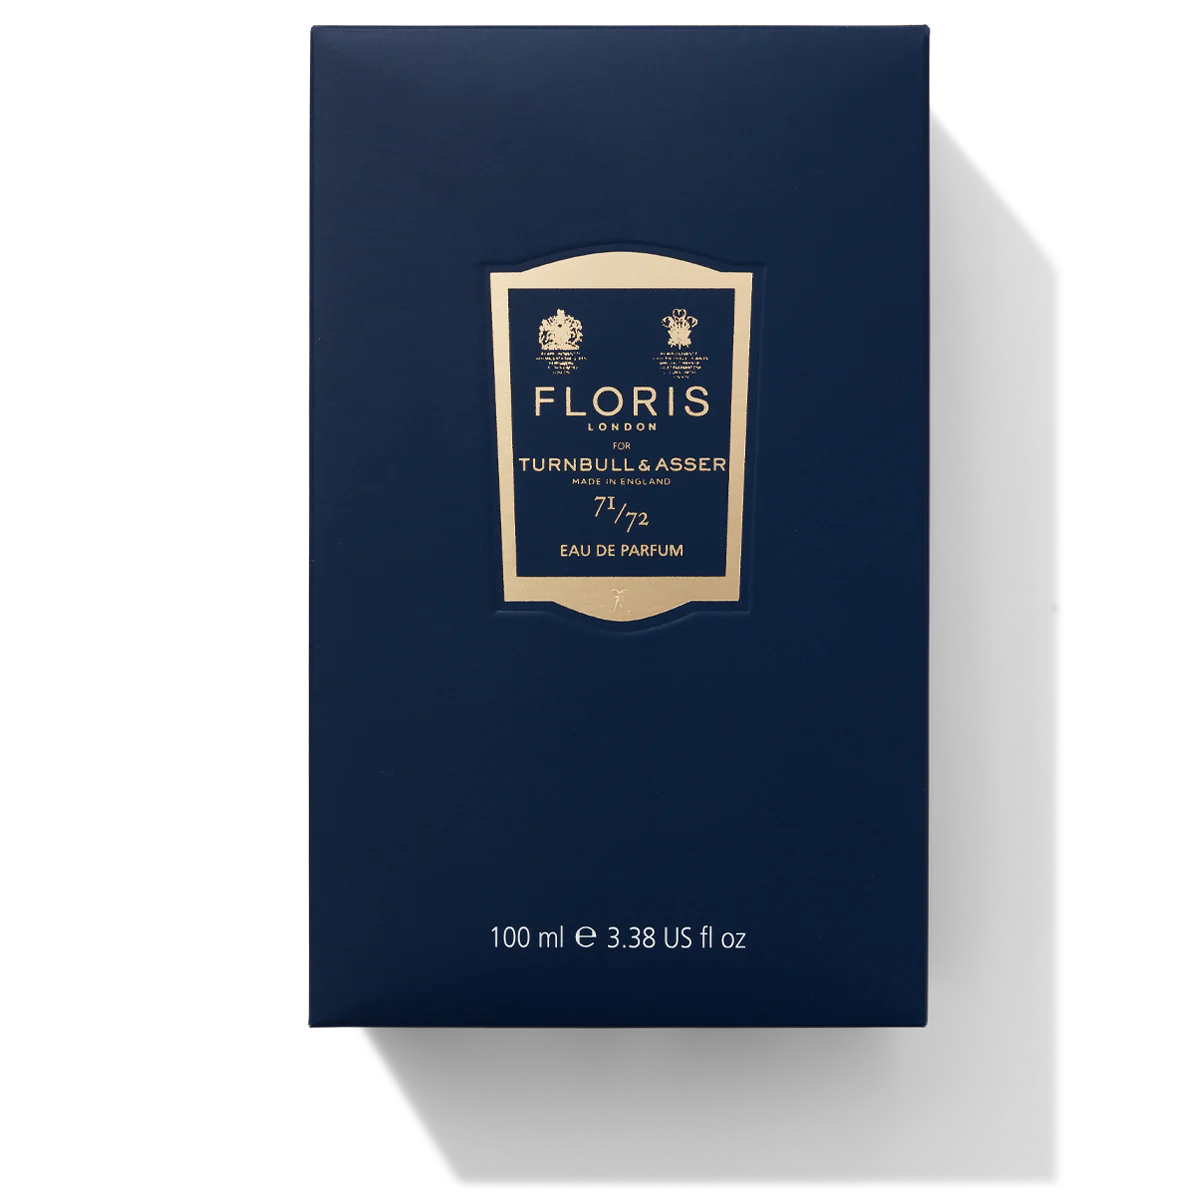 Floris London 71/72 Eau de Parfum 100ml Box